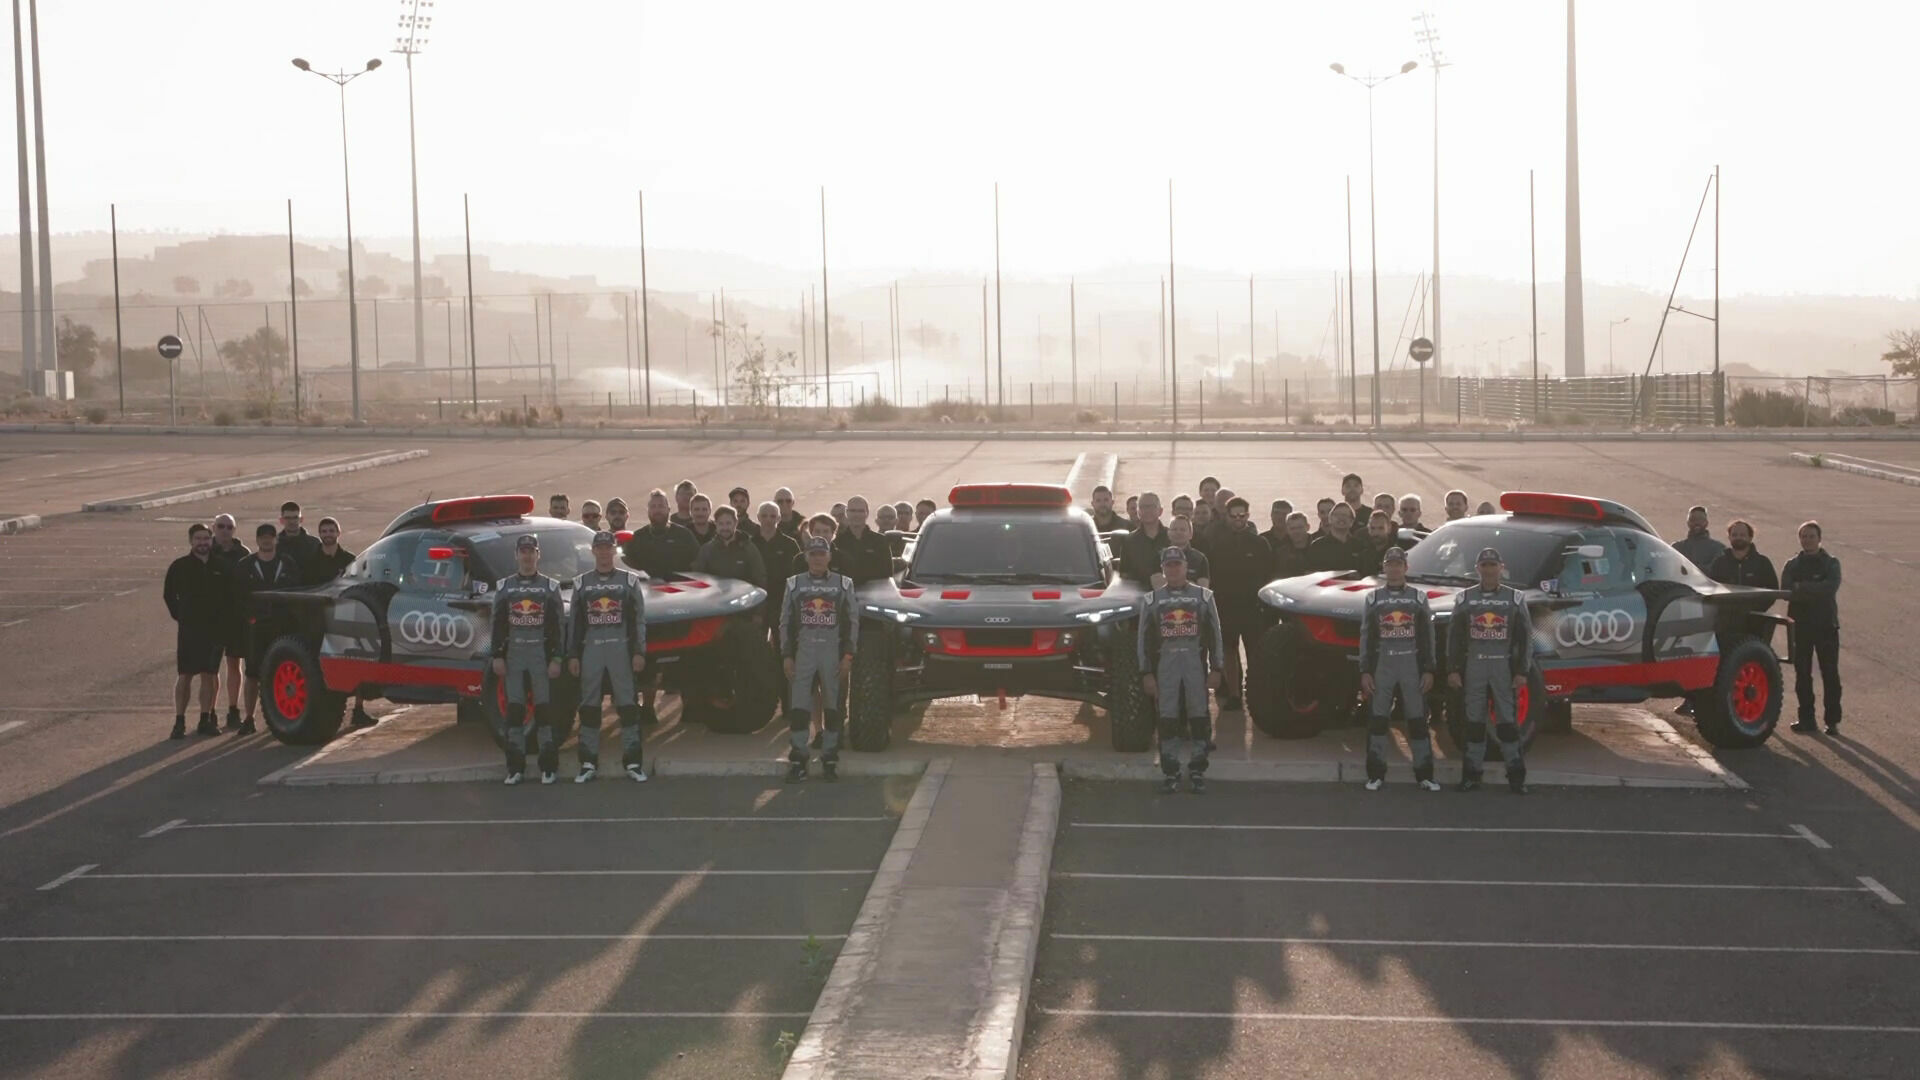 Rallye du Maroc 2022: Backstage – Drei Autos im Einsatz